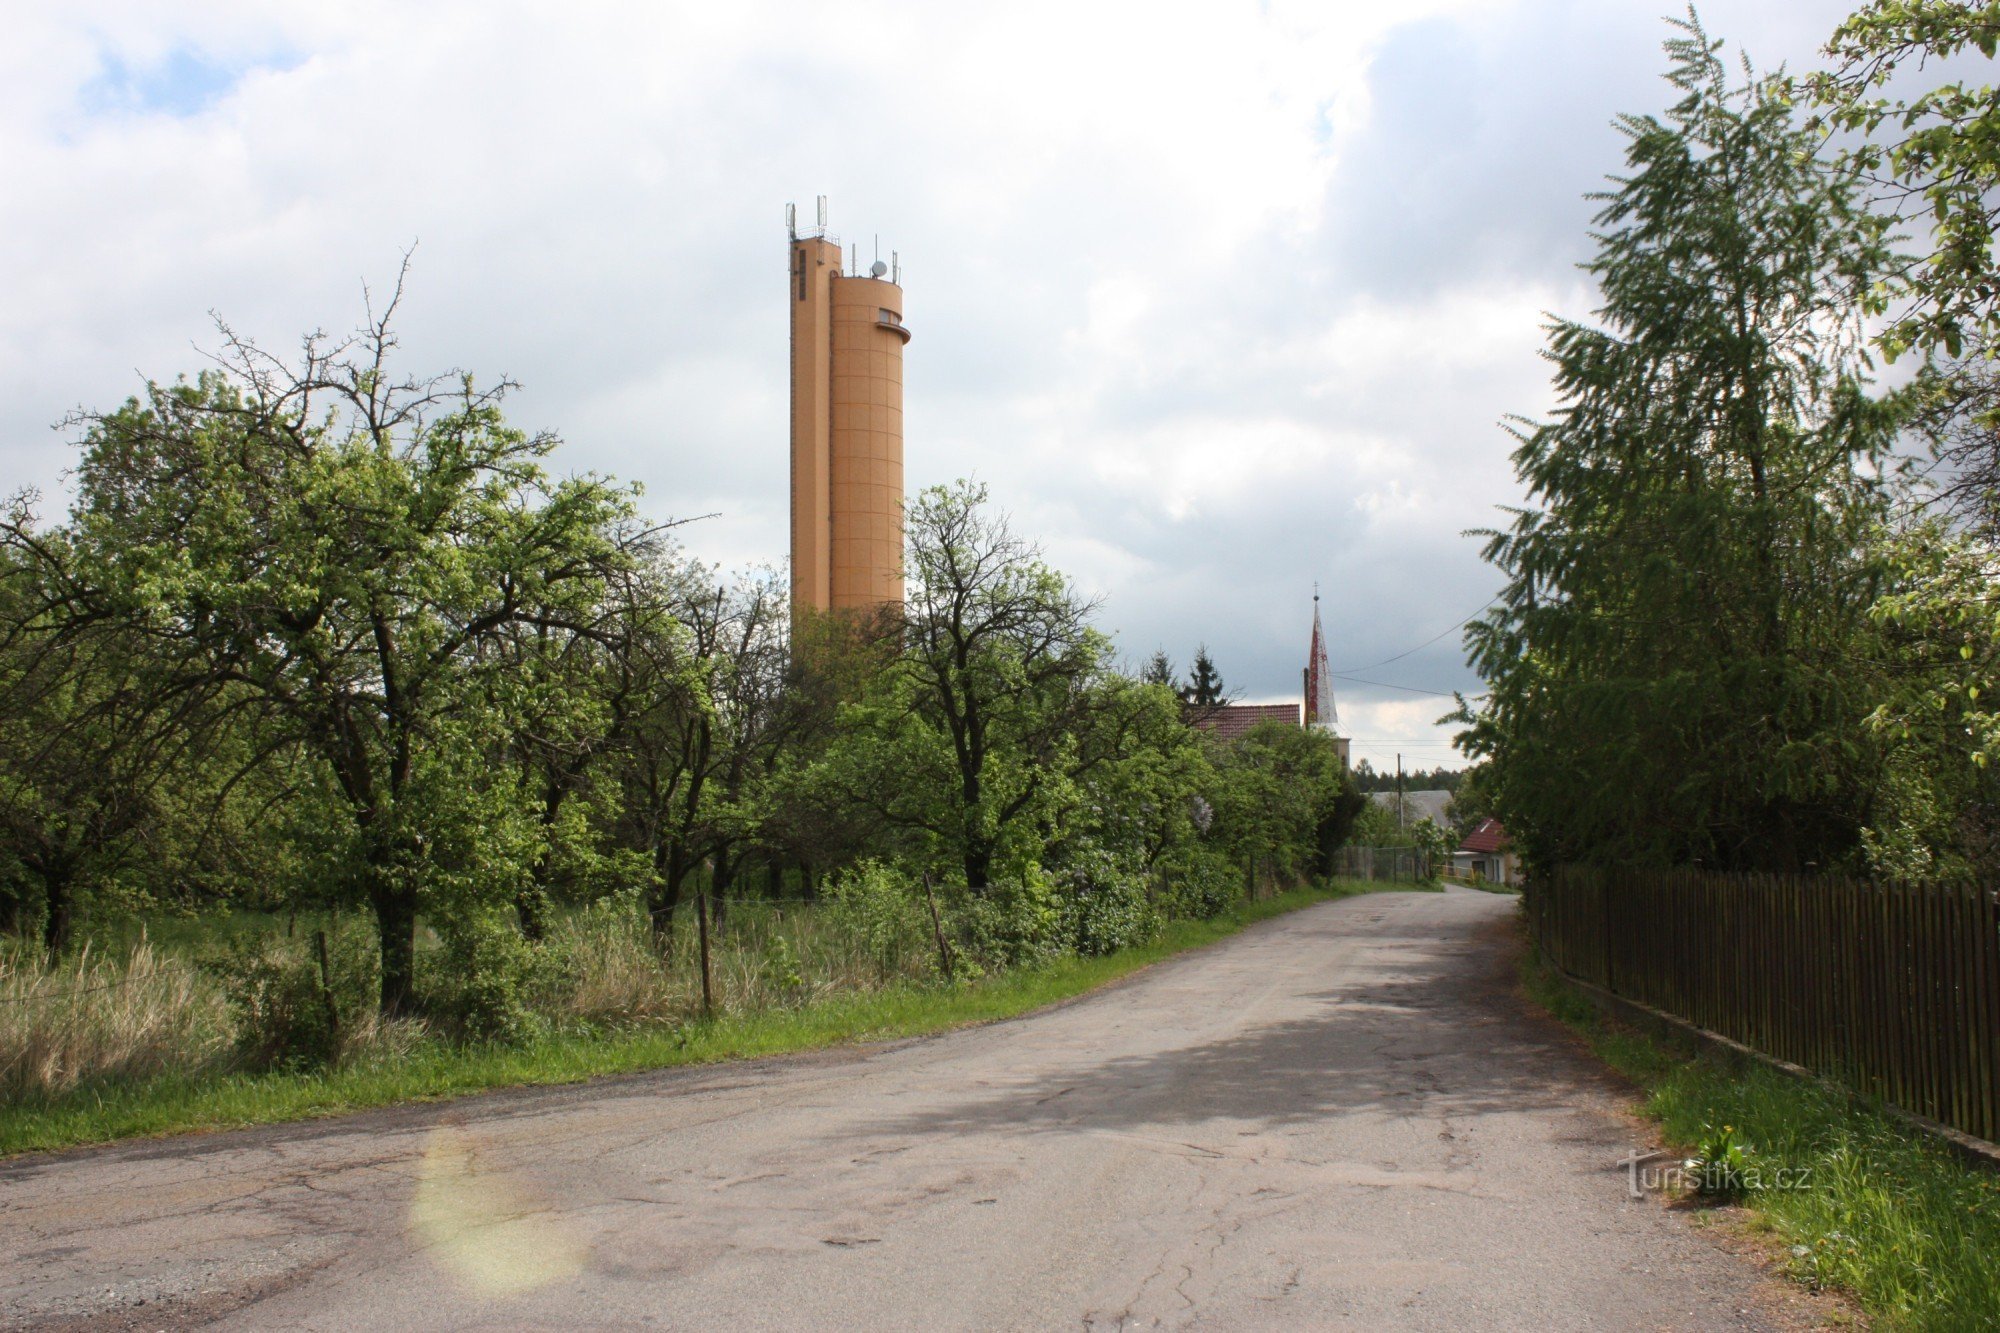 Två landmärken för bosättningen Práčov - kyrkan och vattentornet